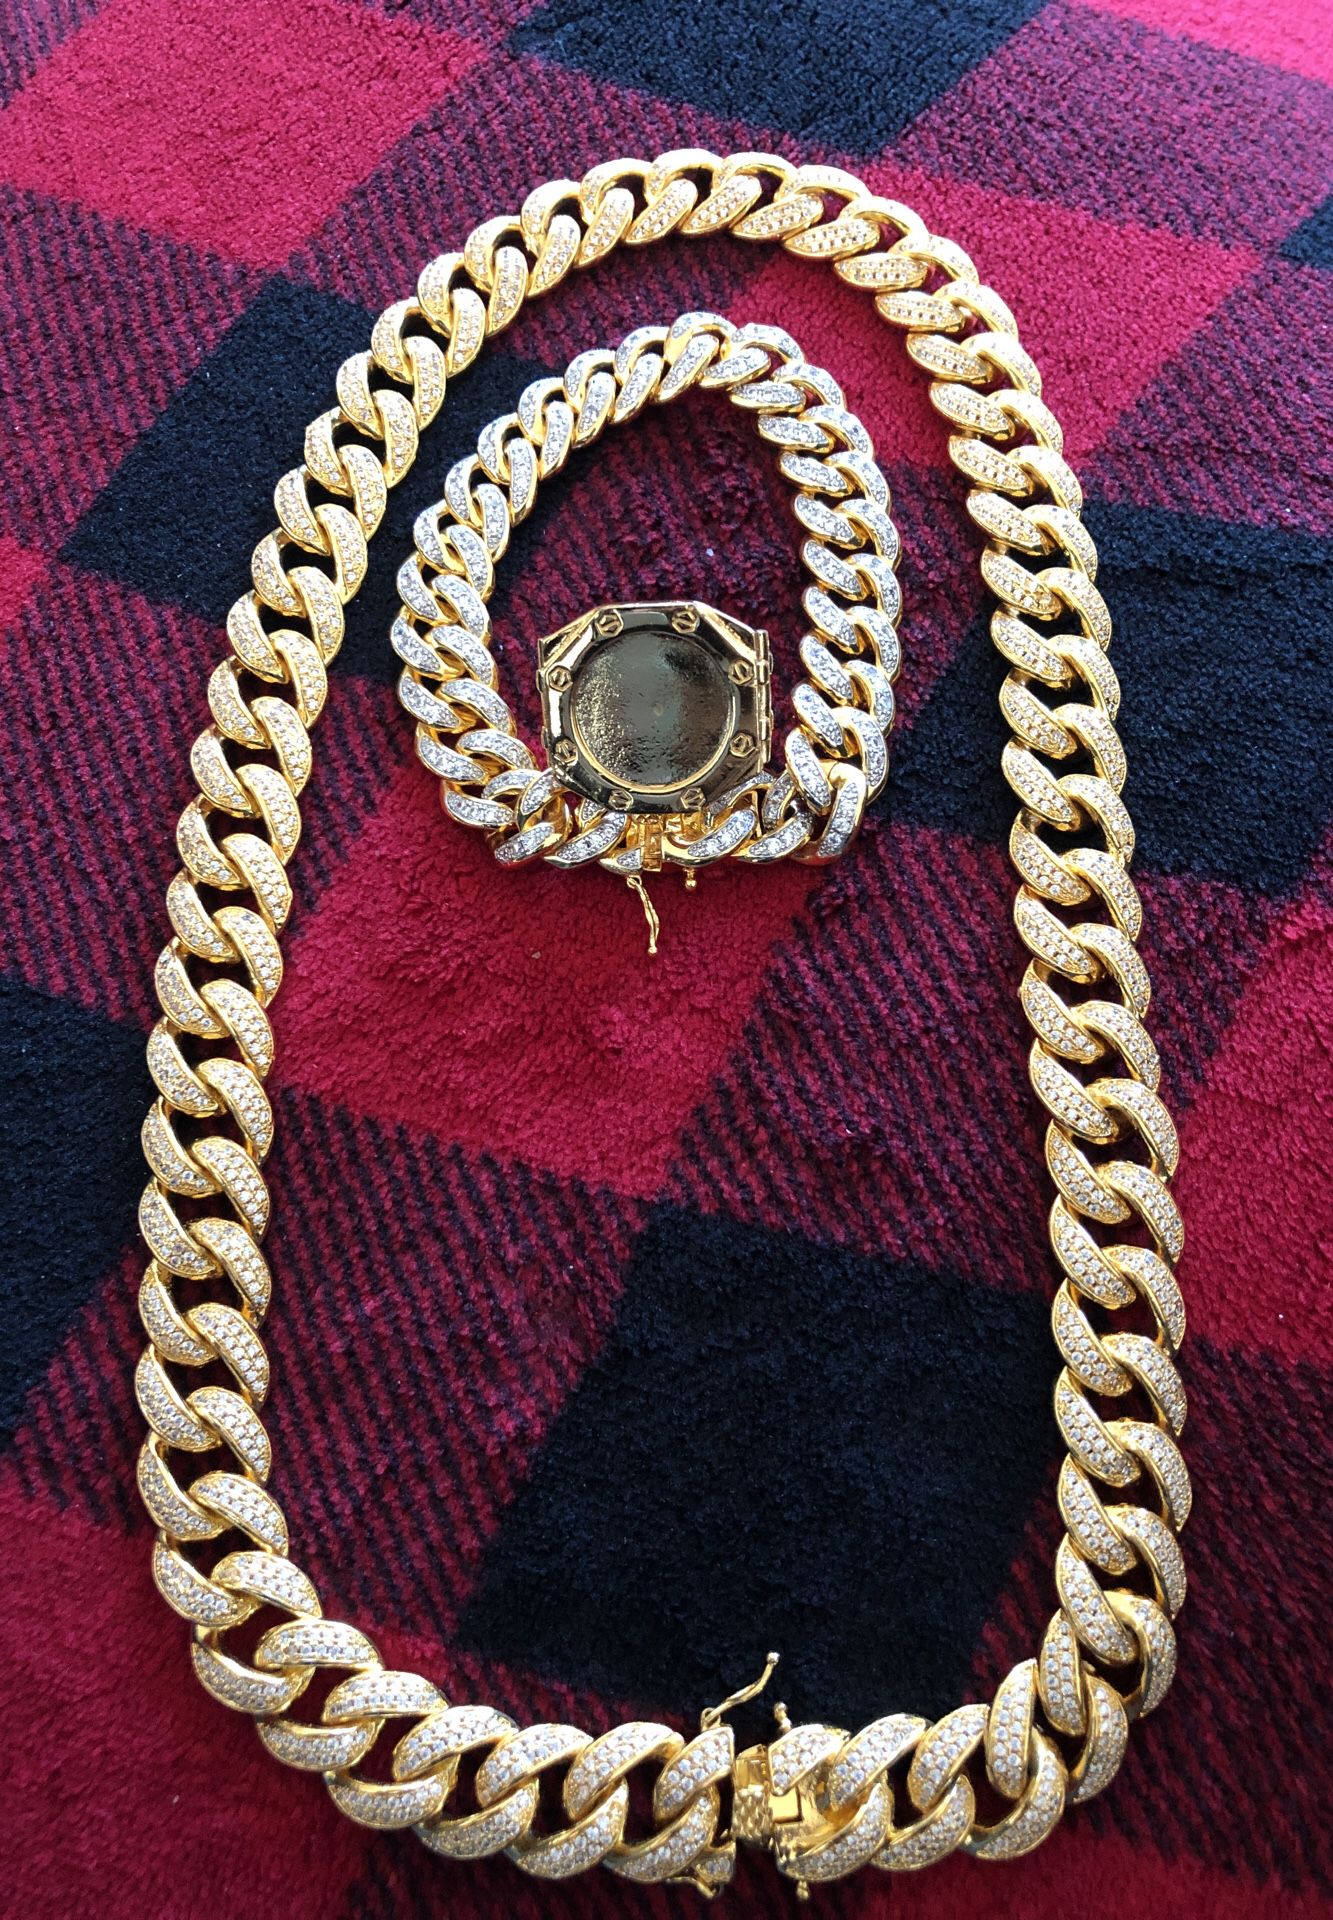 Chain,bracelet,ring